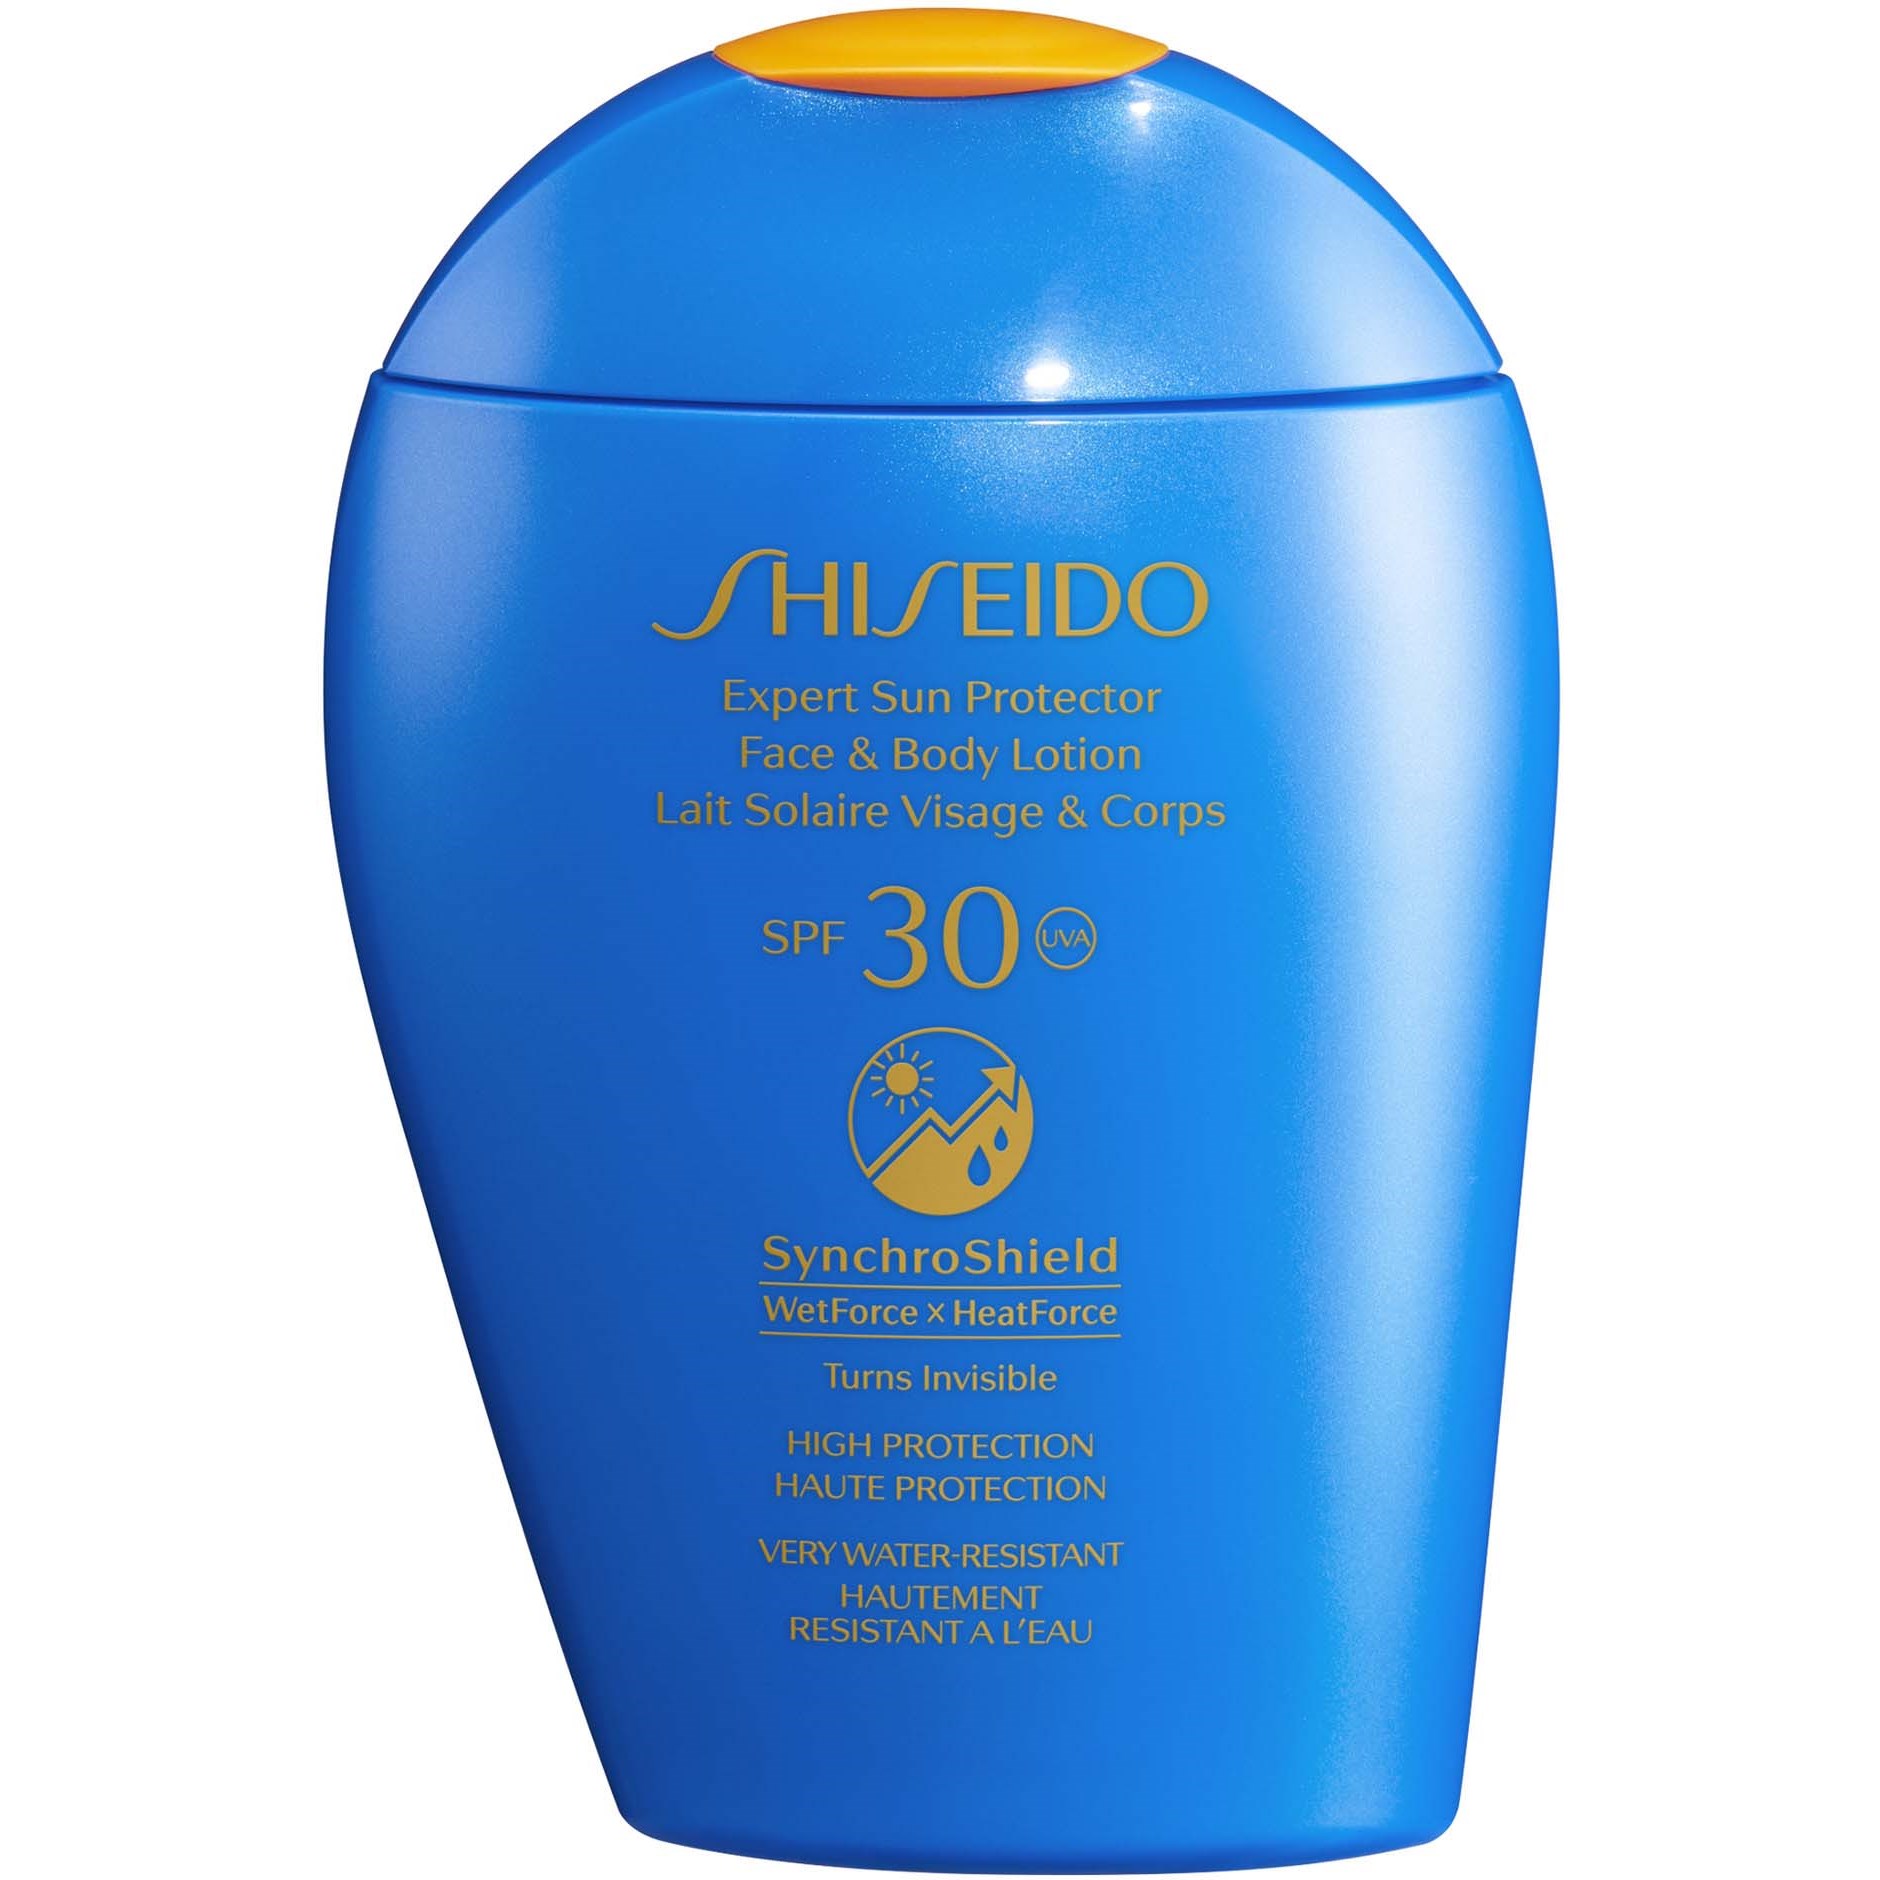 Bilde av Shiseido Expert Sun Protector Face & Body Lotion Spf30 150 Ml